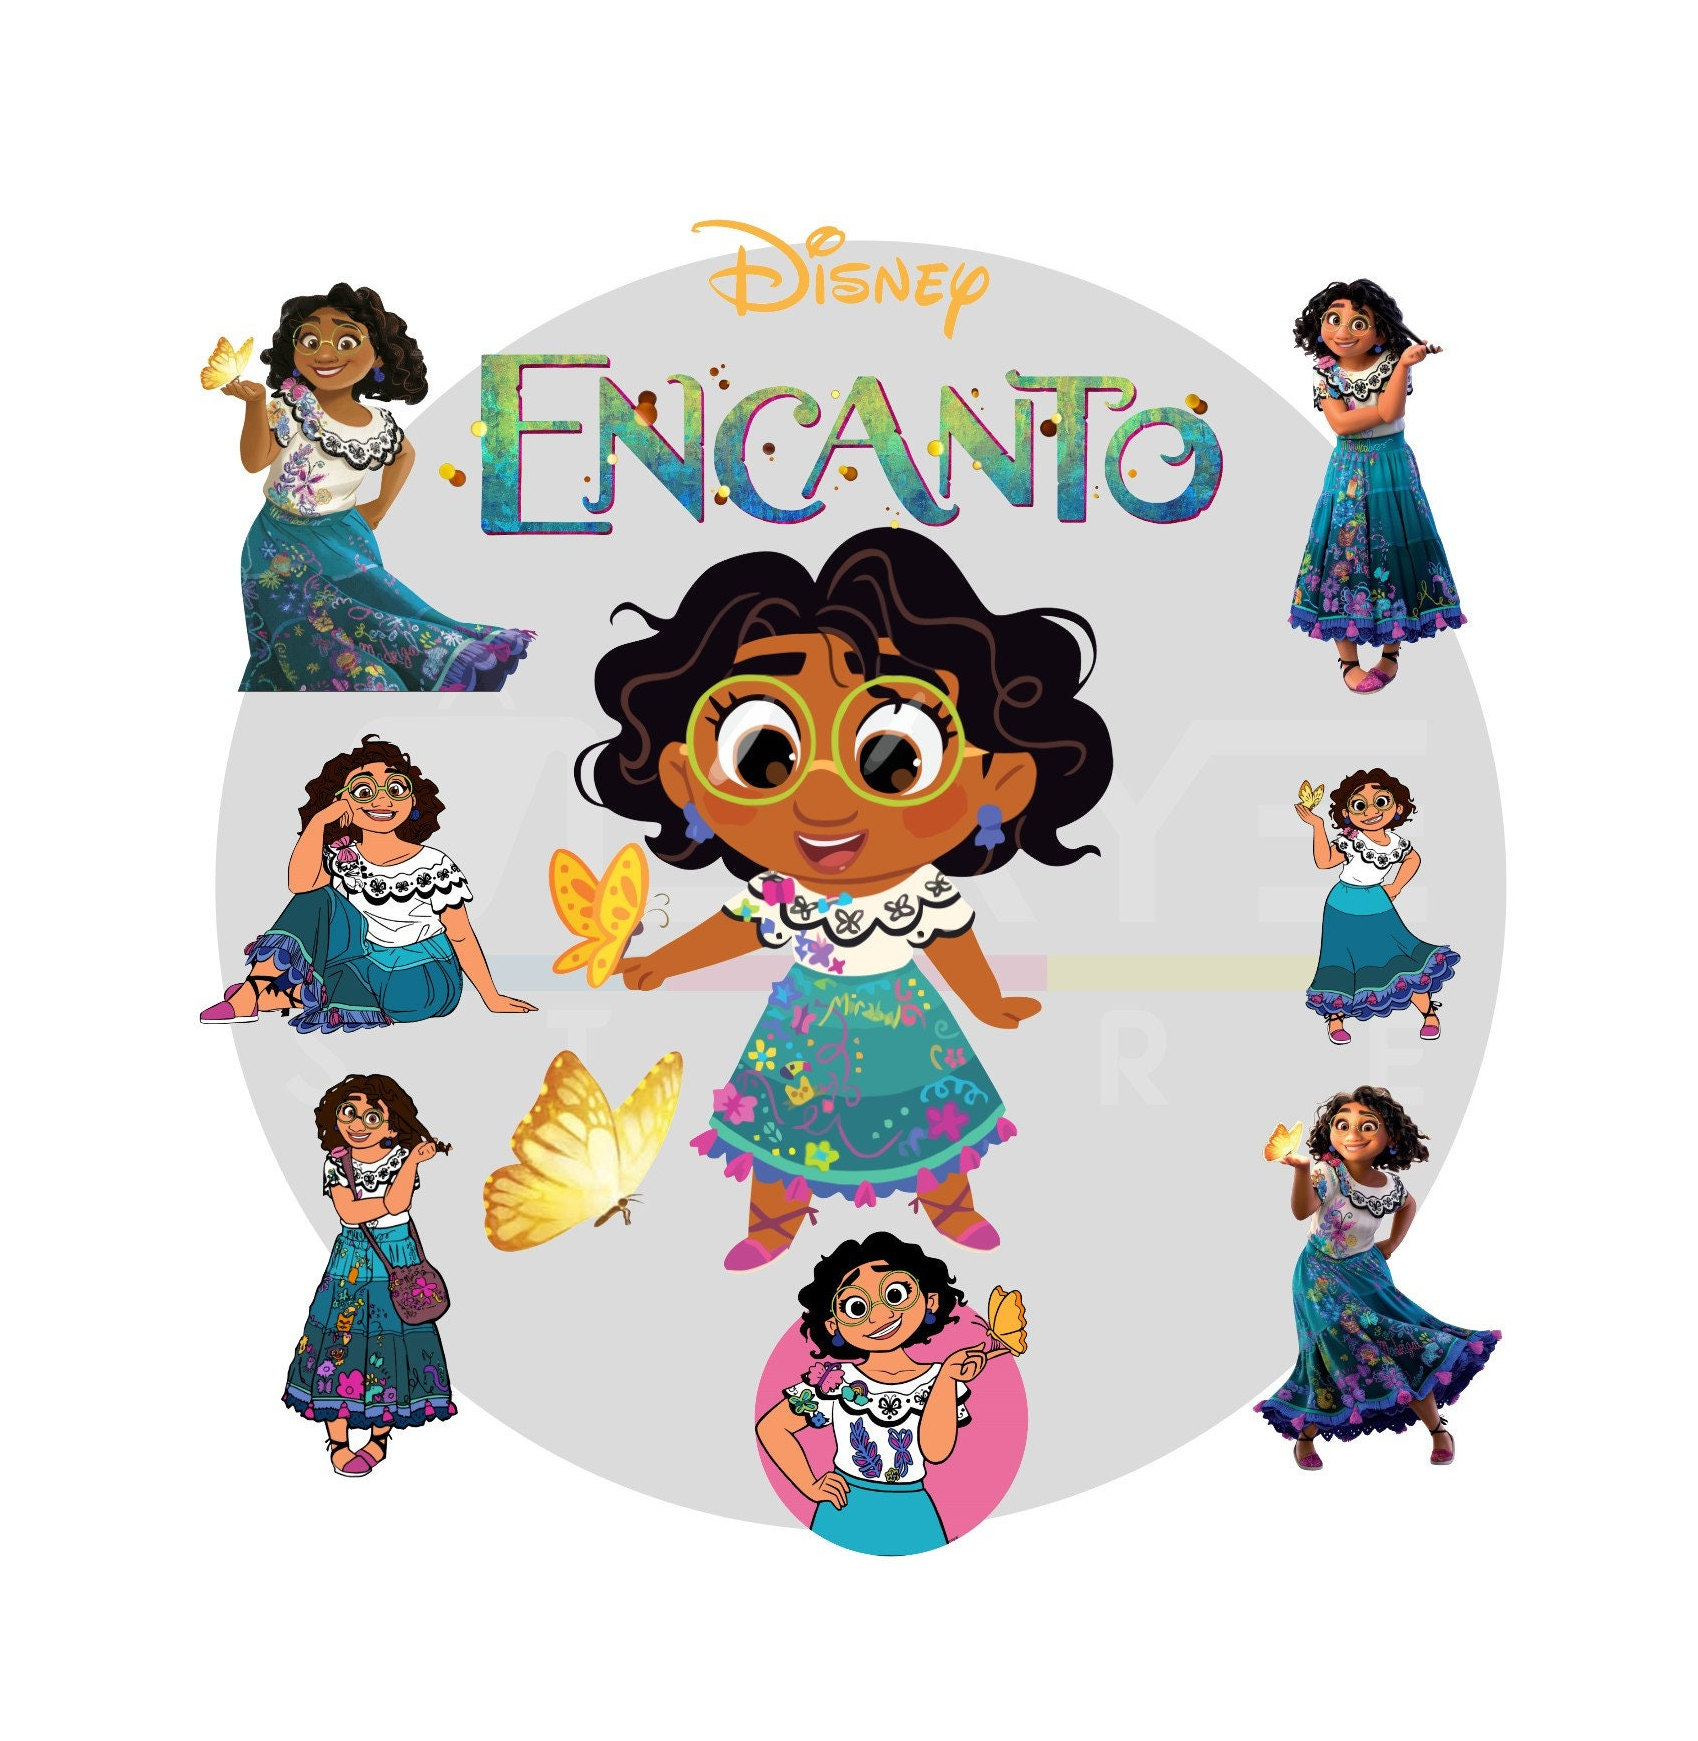 Tìm kiếm hình ảnh clipart hoàn hảo cho dự án của bạn? Encanto là giải pháp tuyệt vời! Với những bức tranh và hình ảnh đẹp mắt, Encanto là sự lựa chọn tốt nhất.